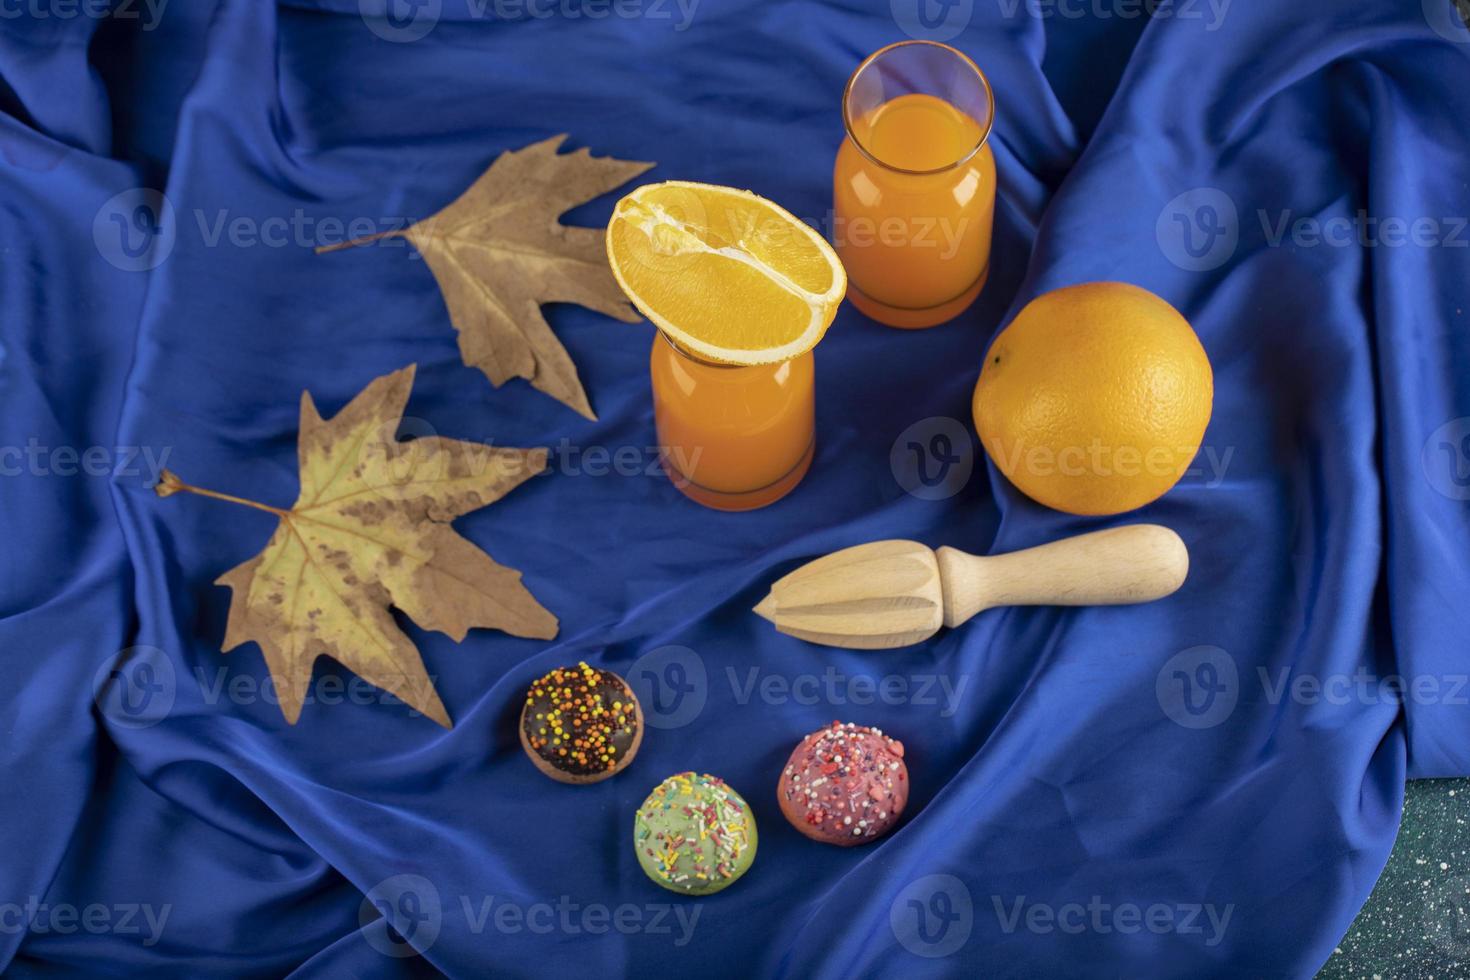 deux pichets en verre avec un délicieux jus et des tranches de fruits orange photo